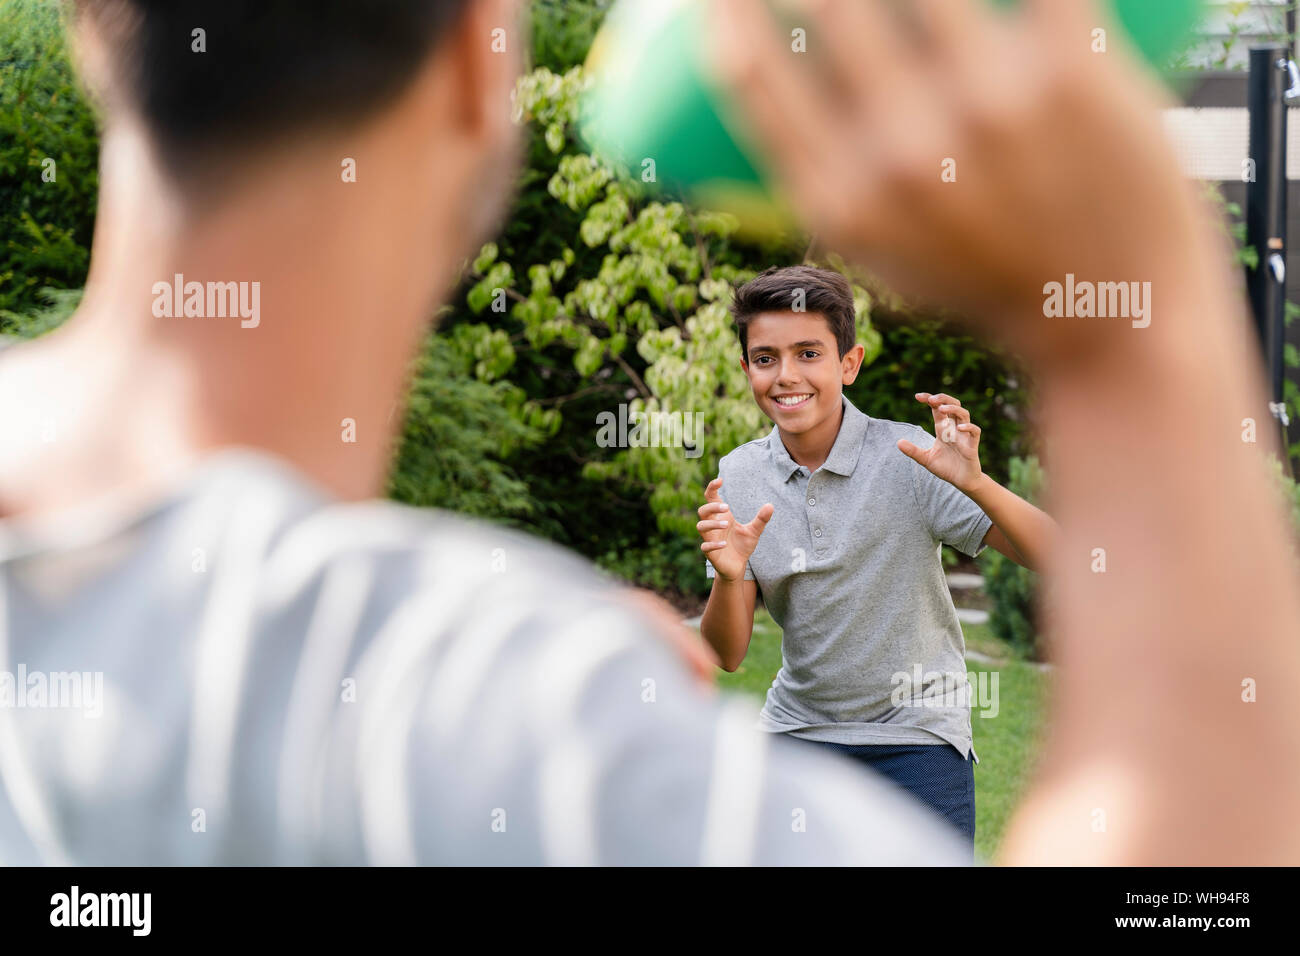 Père et fils jouant avec american football in garden Banque D'Images